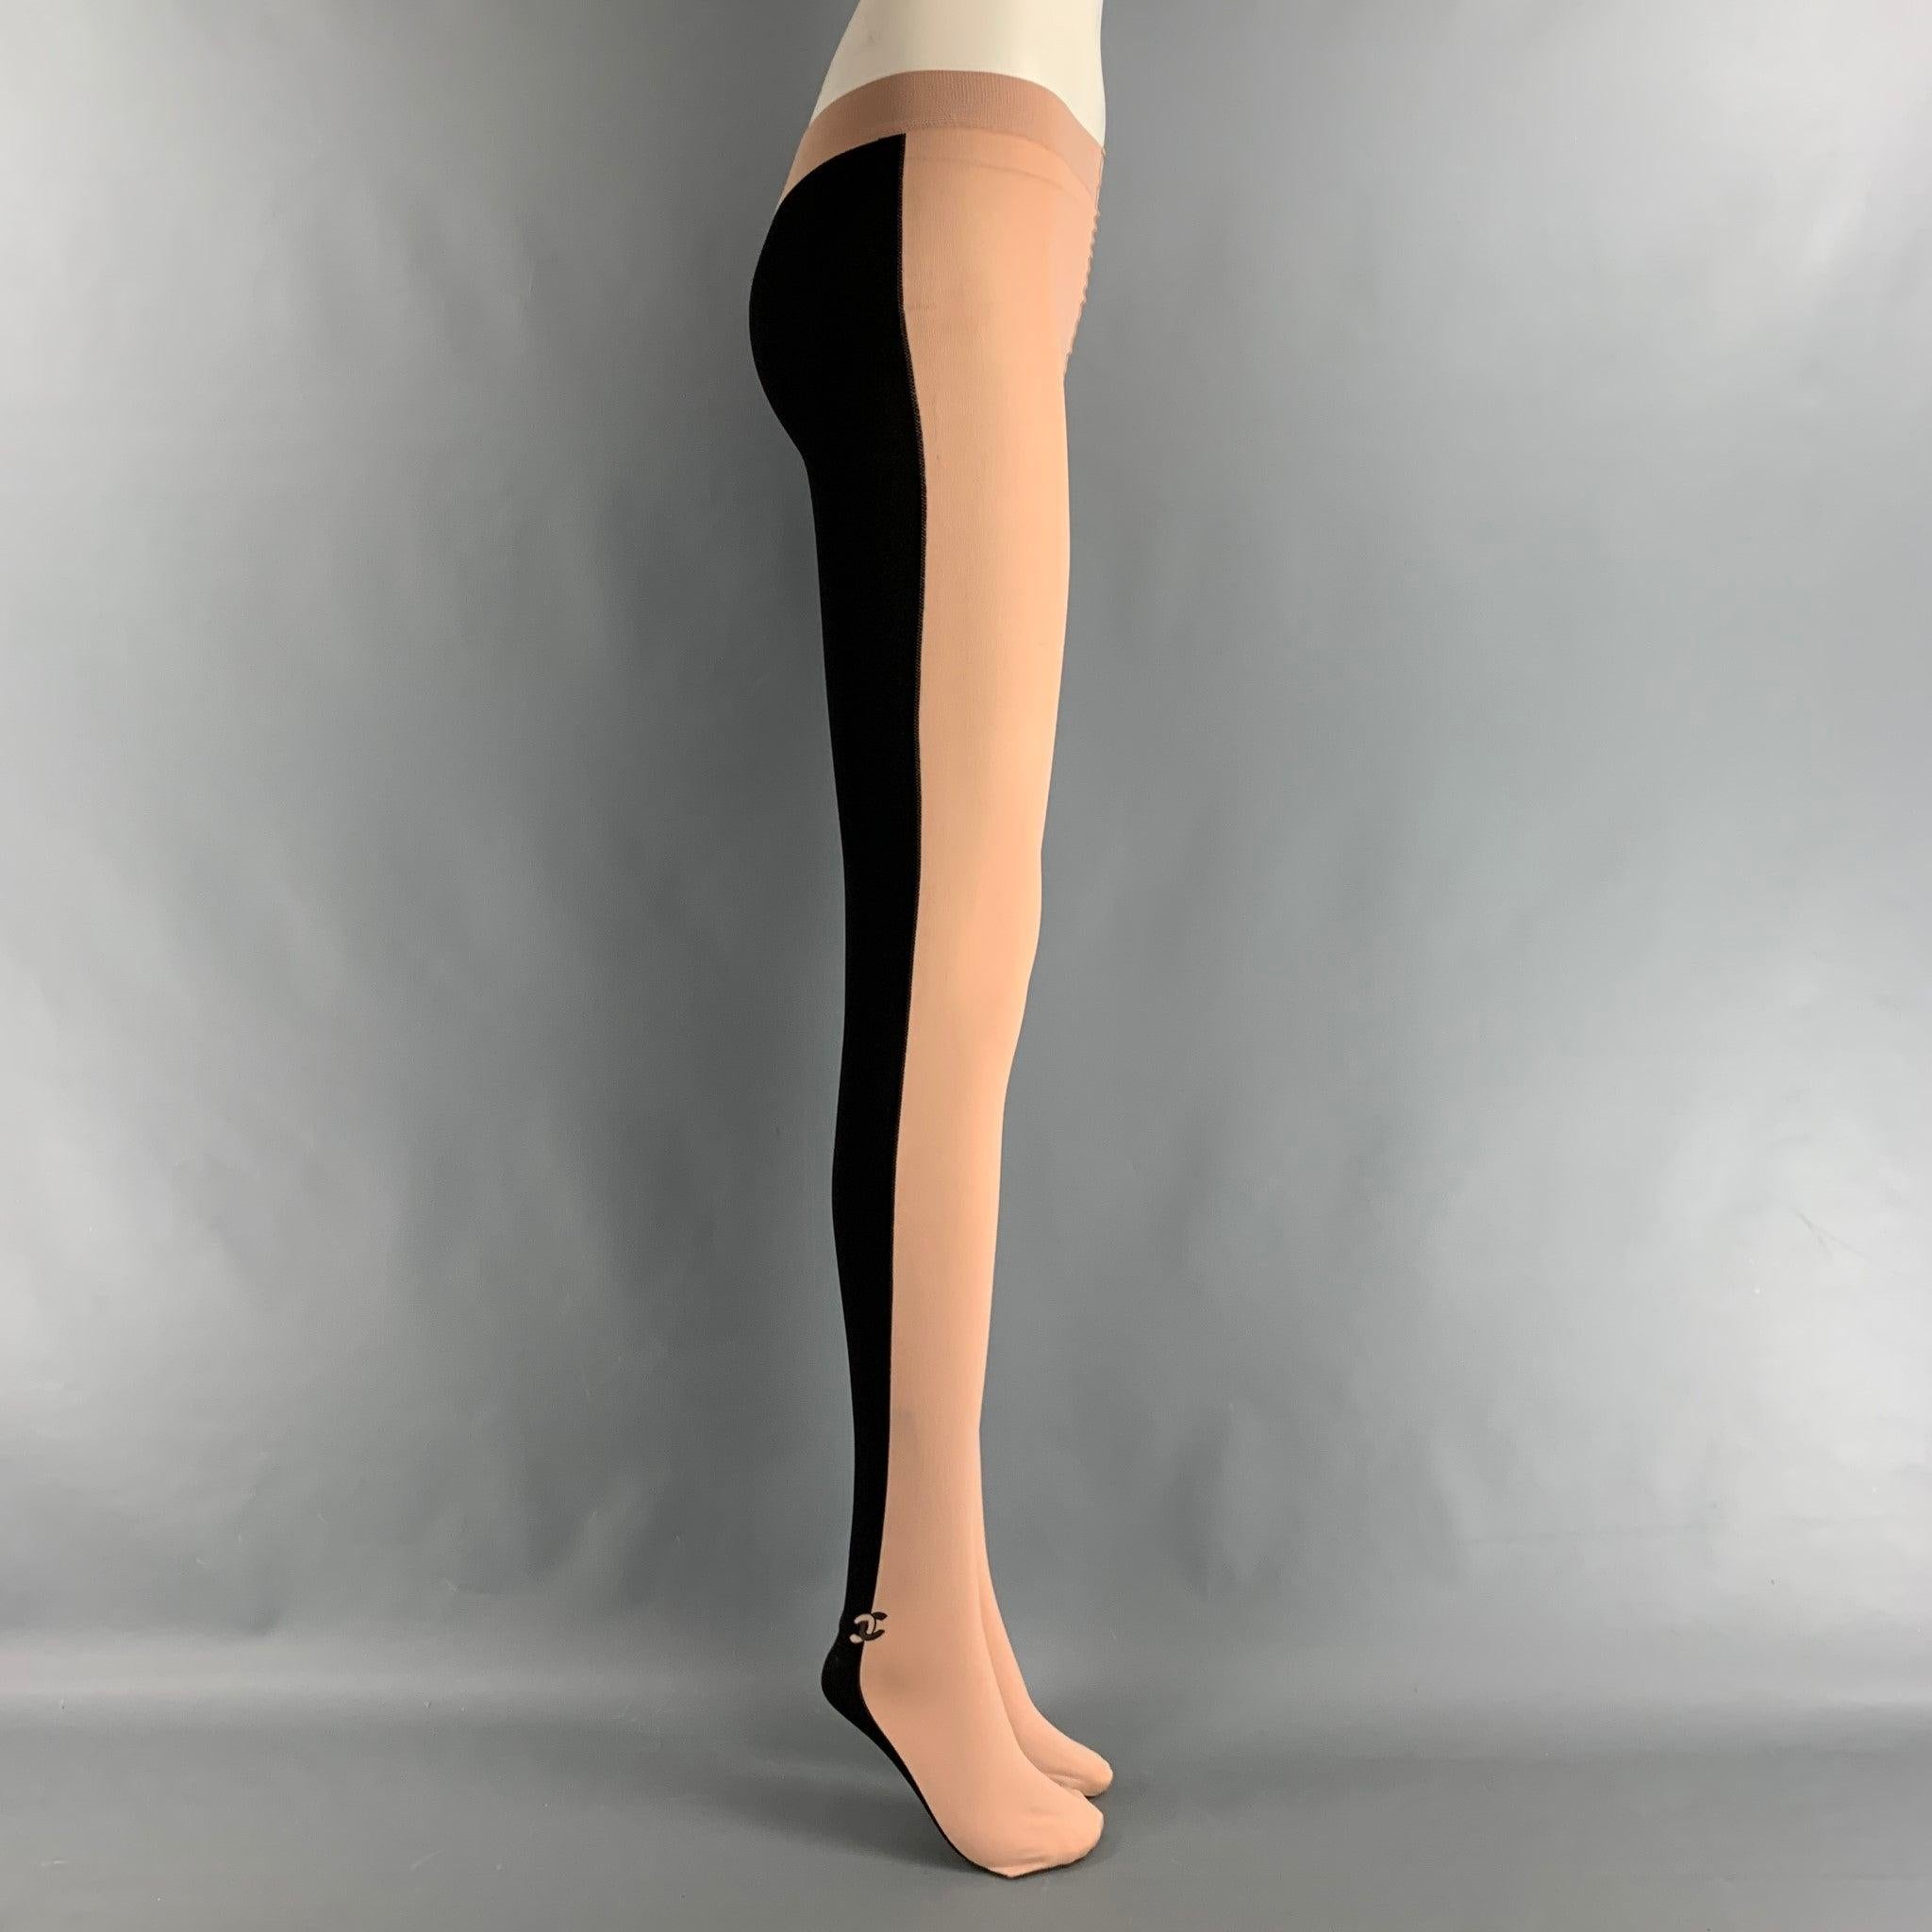 CHANEL Leggings aus schwarzem und nudefarbenem Nylon-Strickmaterial mit CC-Logo-Detail am Knöchel, Stretch-Warteschleife und Bein und mit Fußdesign. Hergestellt in Italien. Ausgezeichneter Pre-Owned Zustand. 

Markiert:   M 

Abmessungen: 
  Taille: